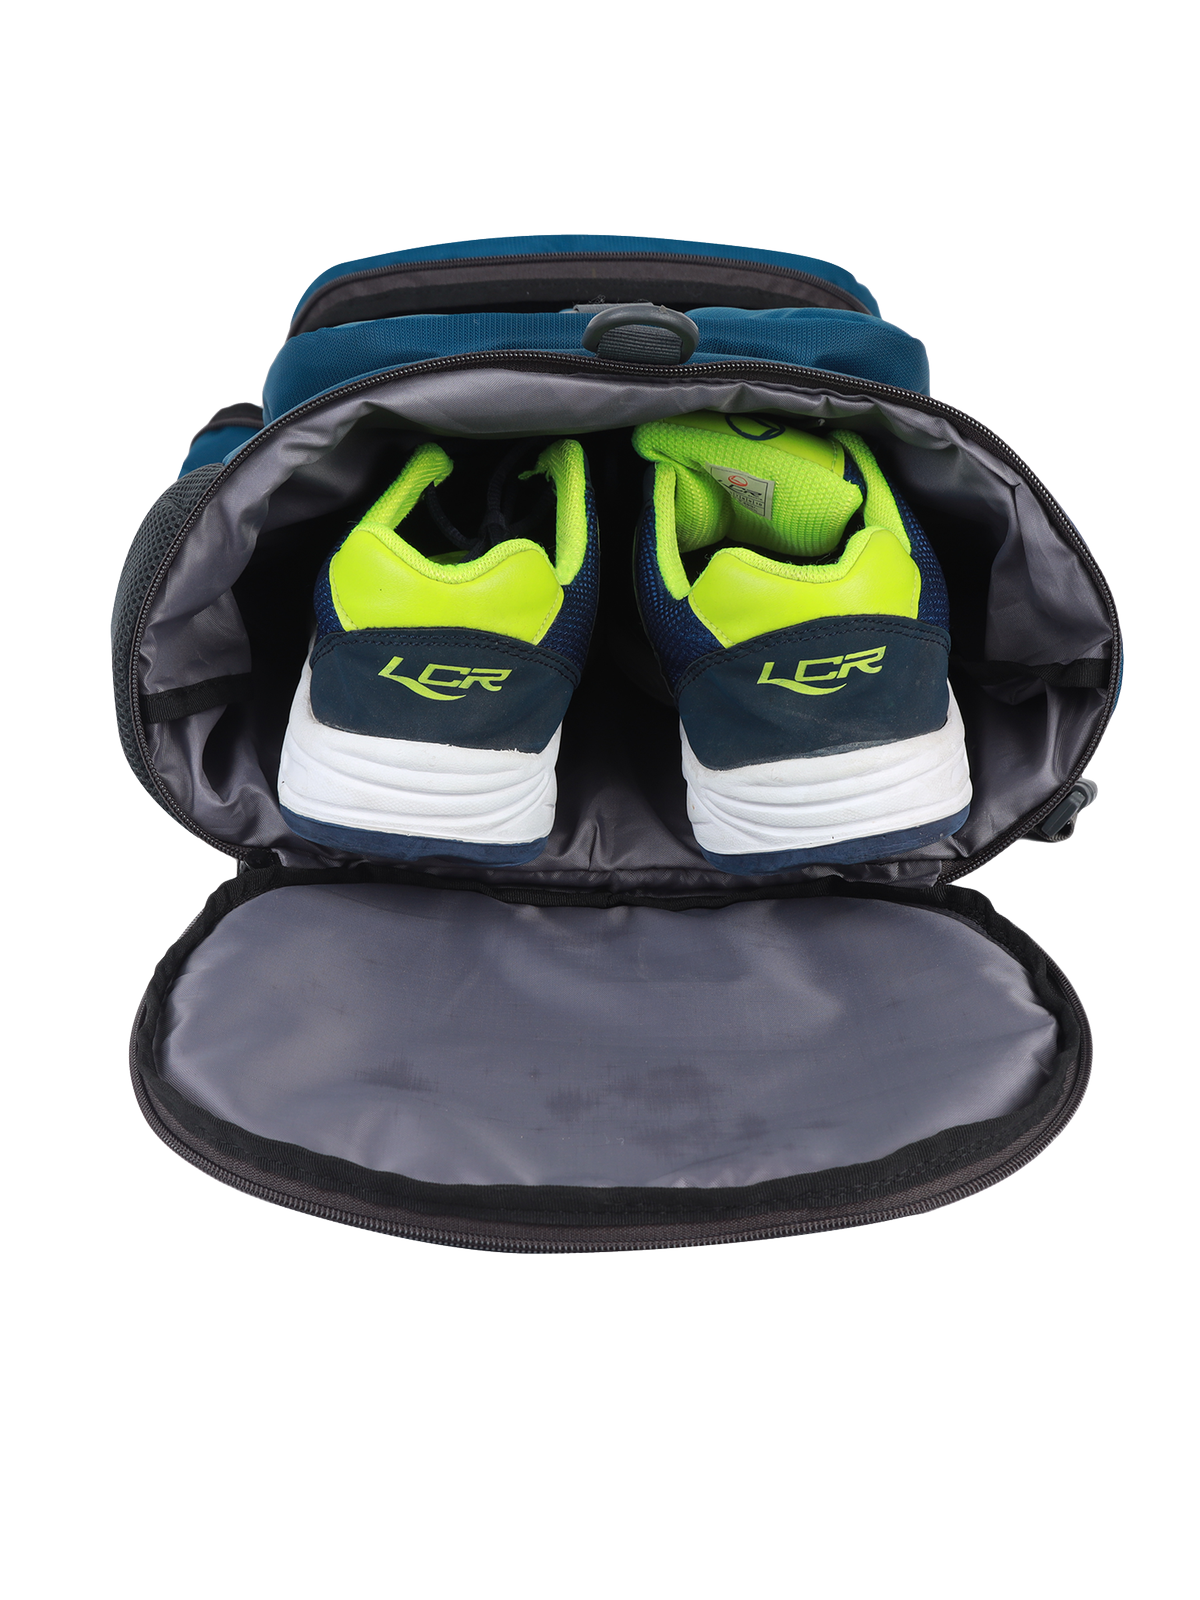 Explorer Laptop Backpack Duffle Bag Sling Bag (Blue)